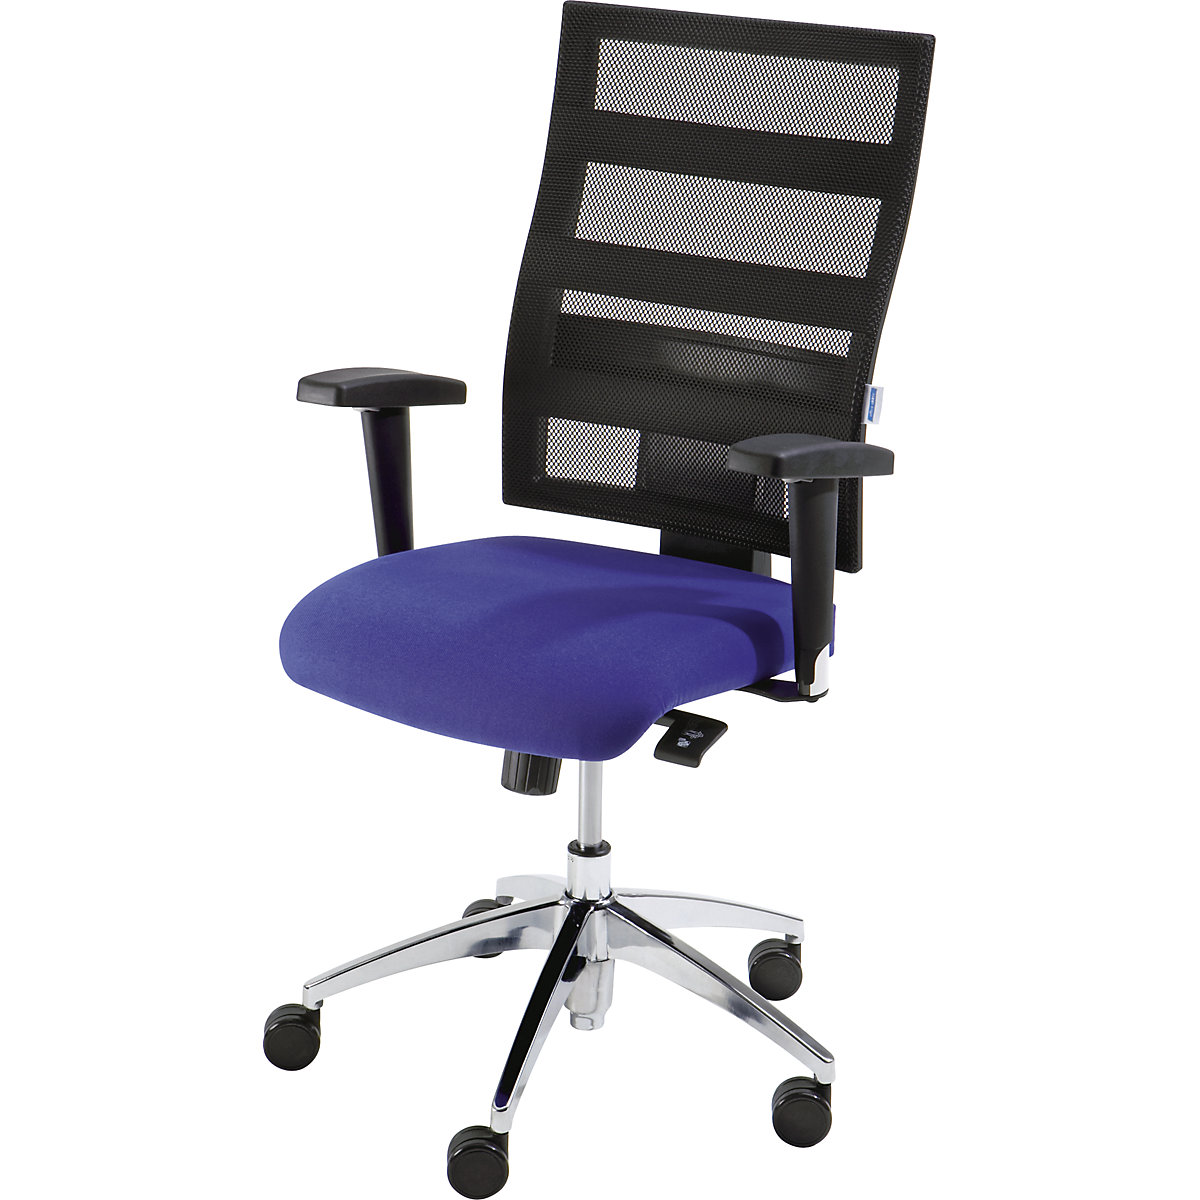 EUROKRAFTpro – Otočná židle pro operátory, výška opěradla 550 mm, mechanika s bodovou synchronizací, plochý sedák, modrý sedák, černé síťované opěradlo